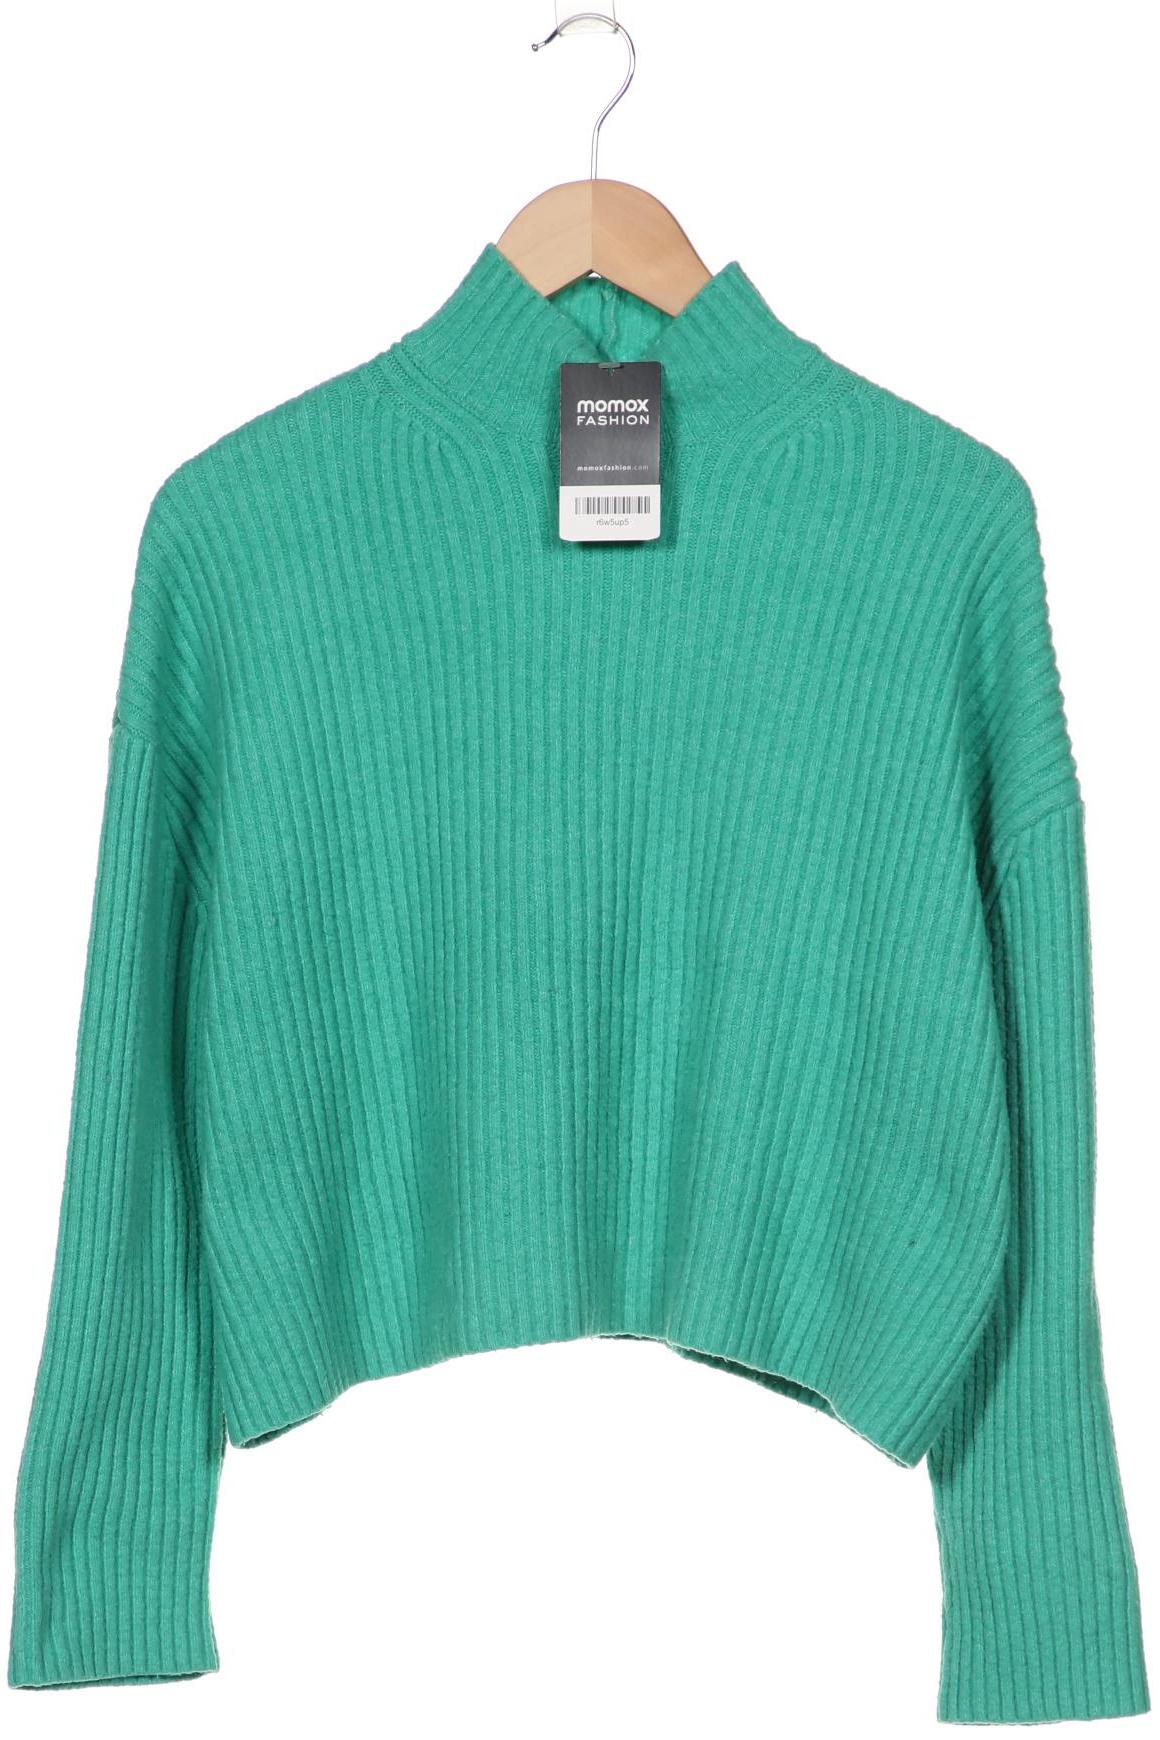 bershka Damen Pullover, grün von Bershka